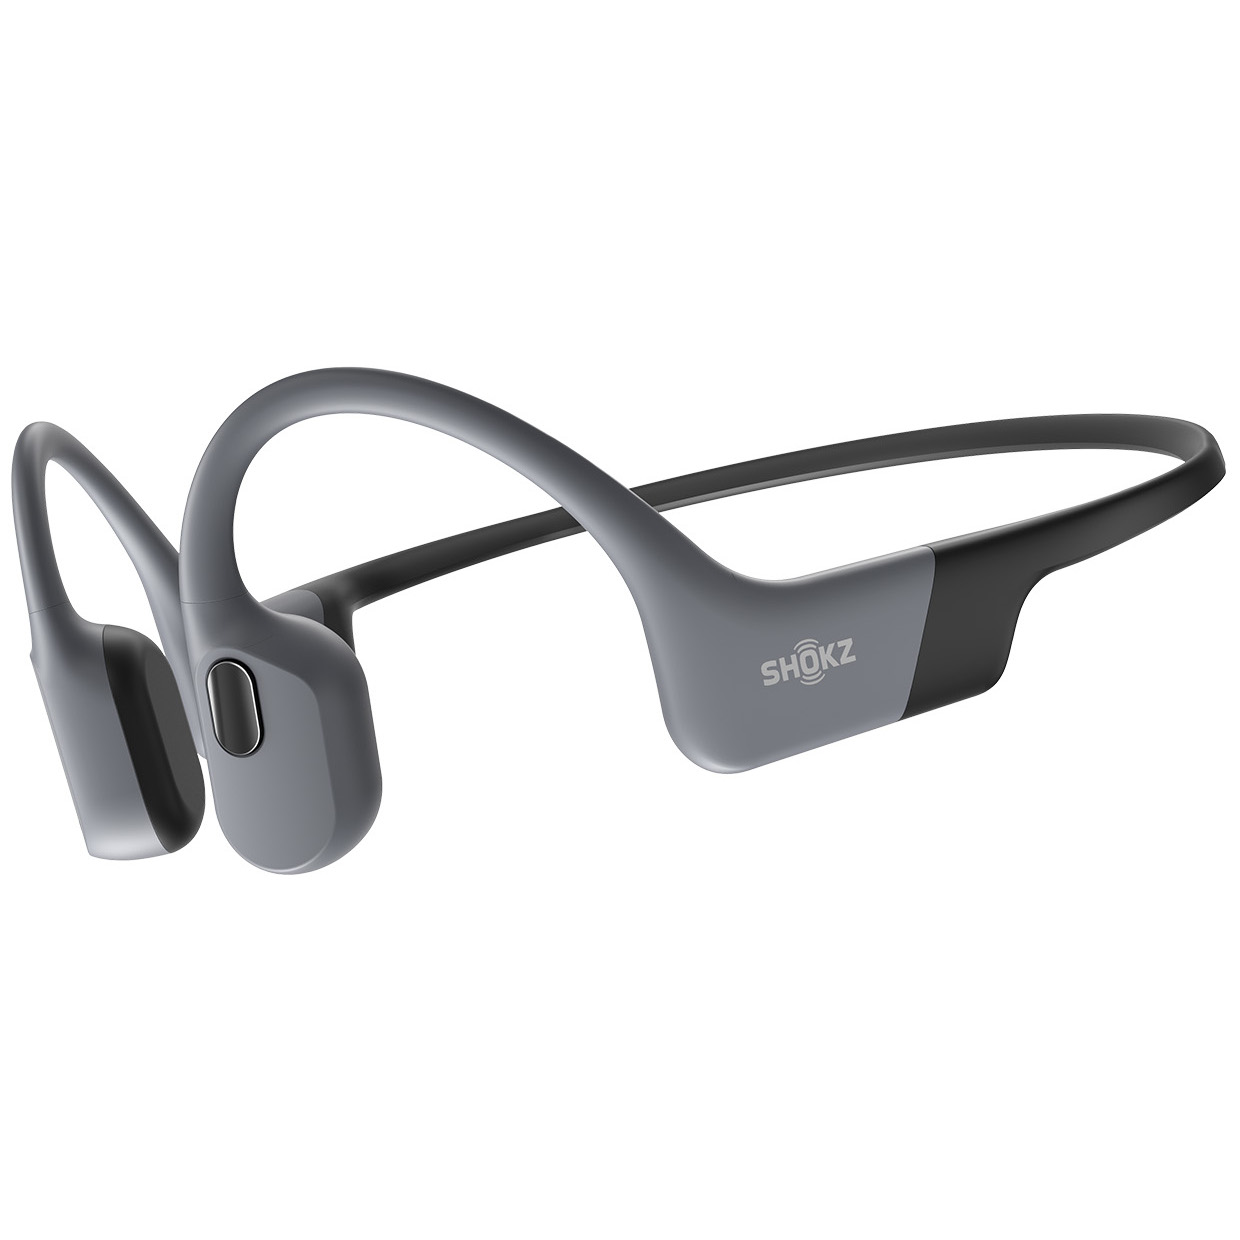 Produktbild von Shokz OpenSwim Pro Wasserdichte Kopfhörer - grau